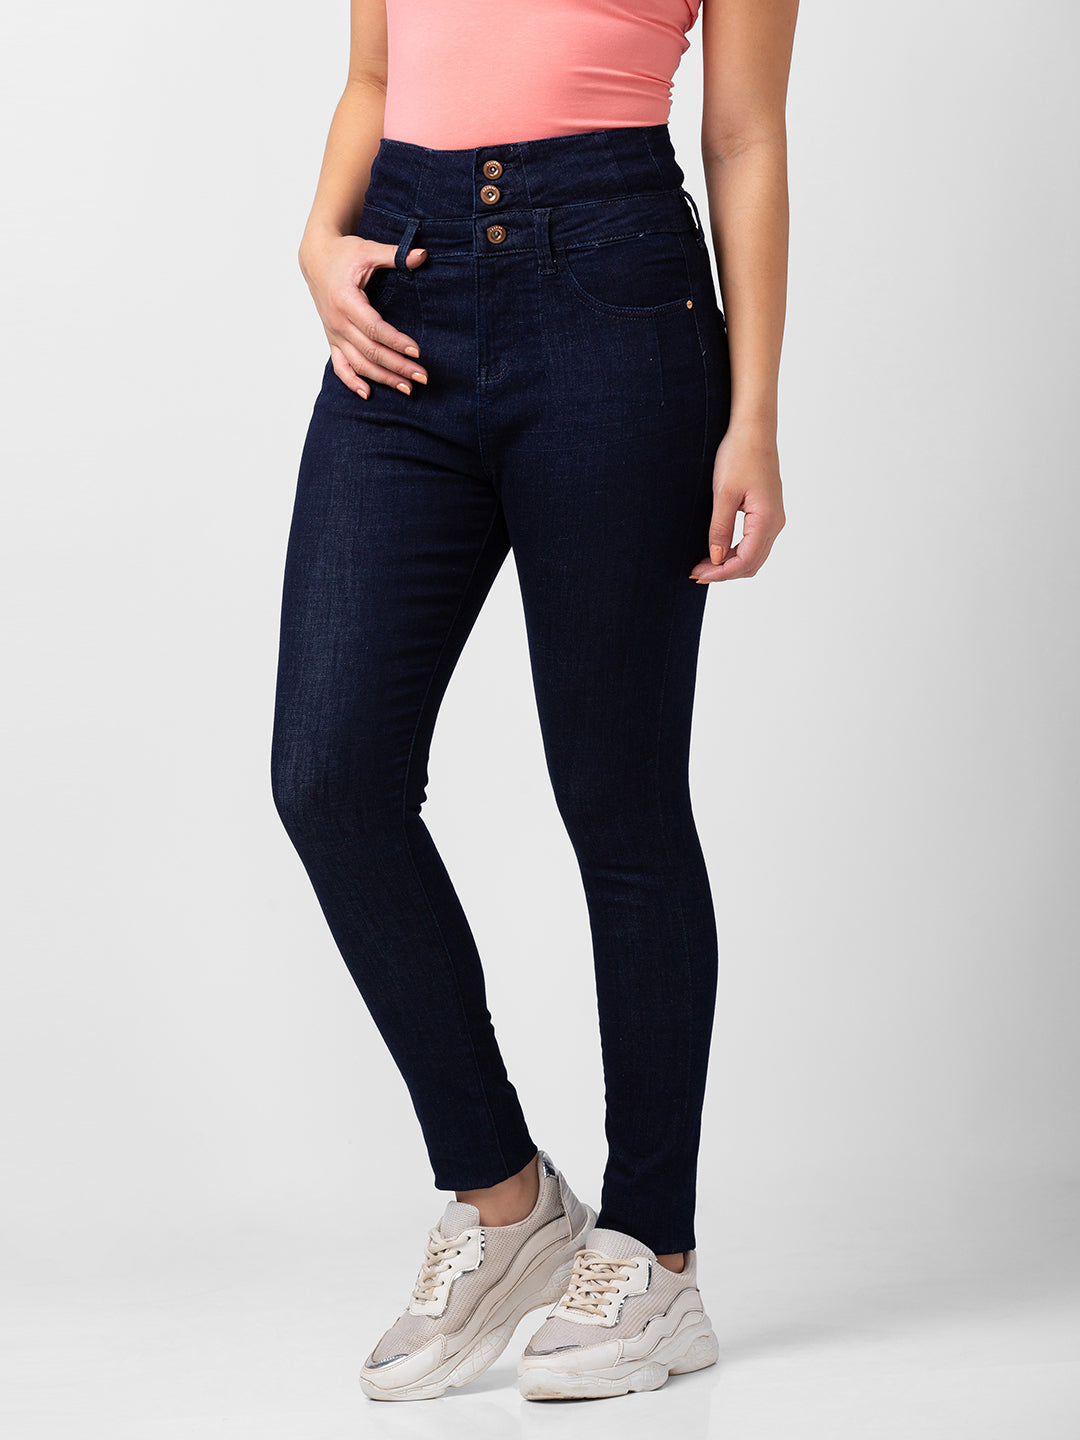 Spykar Women Dark Blue Lycra Skinny Fit Regular Length Jeans (Adora)